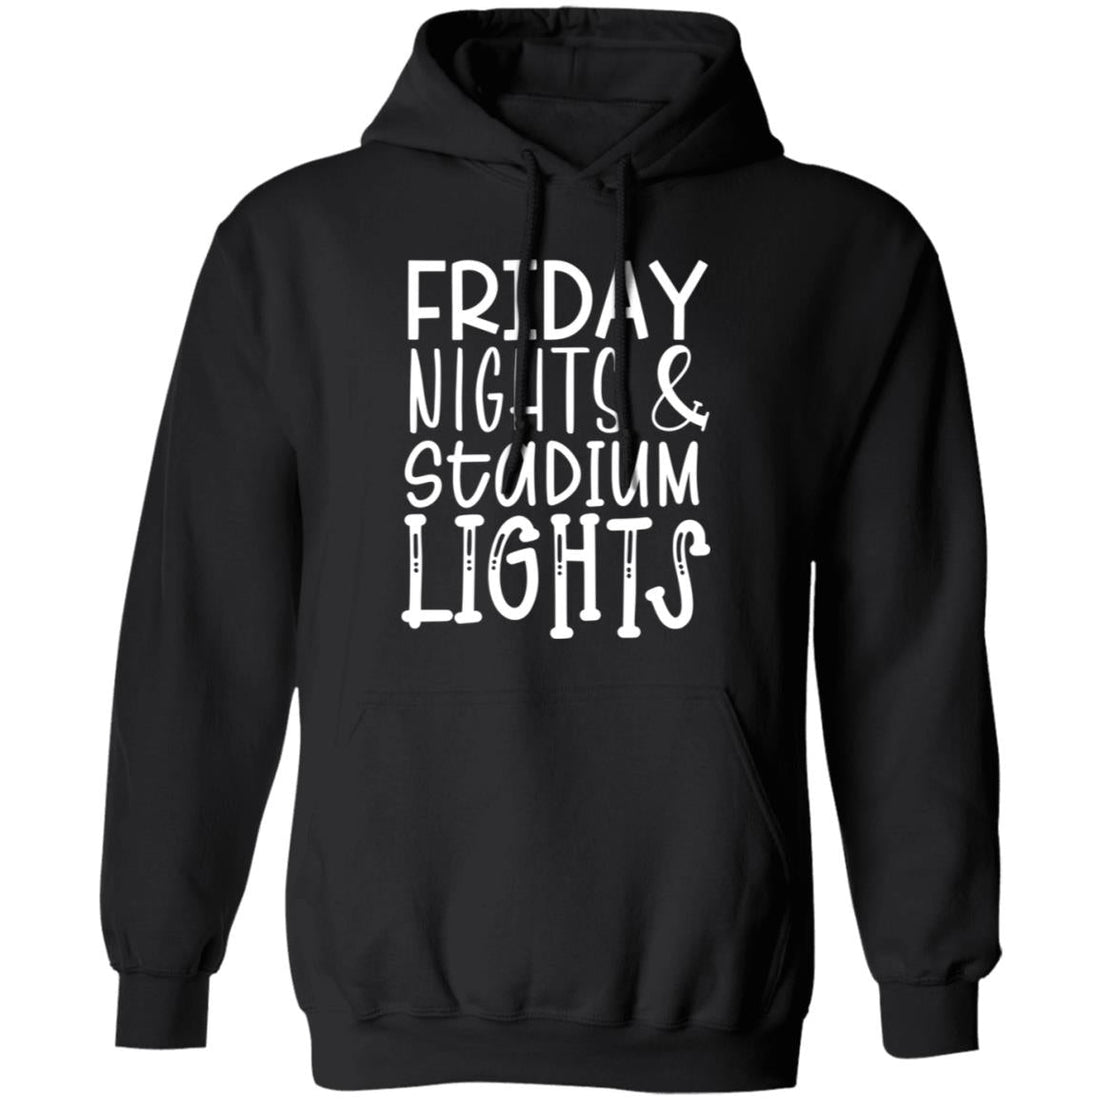 Friday Nights Stadium Lights Pullover Hoodie - Sweatshirts - Positively Sassy - Friday Nights Stadium Lights Pullover Hoodie